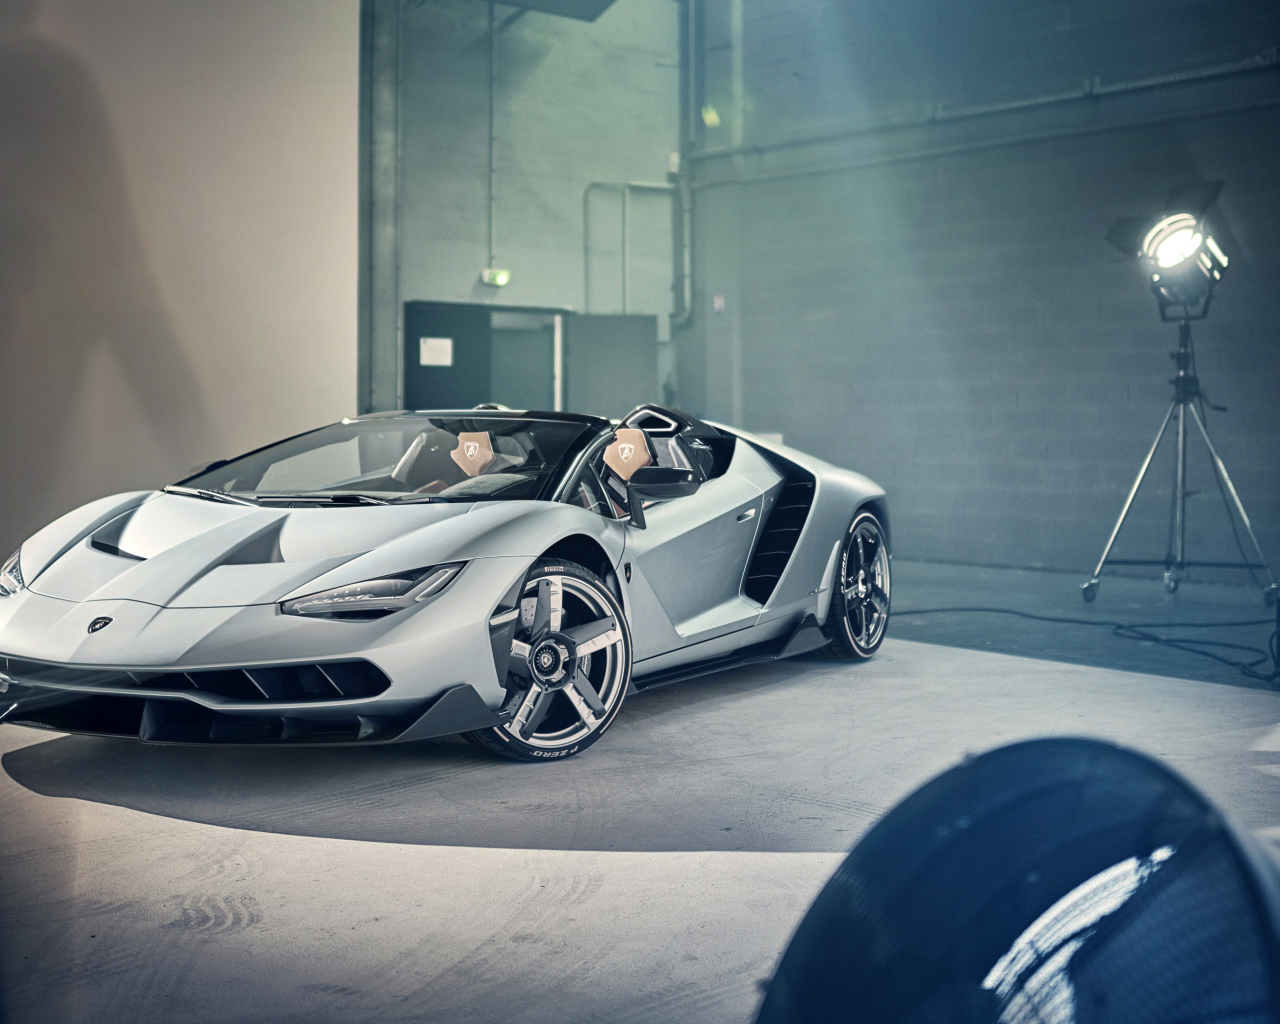 Серебристый автомобиль Lamborghini Centenario Roadster в комнате